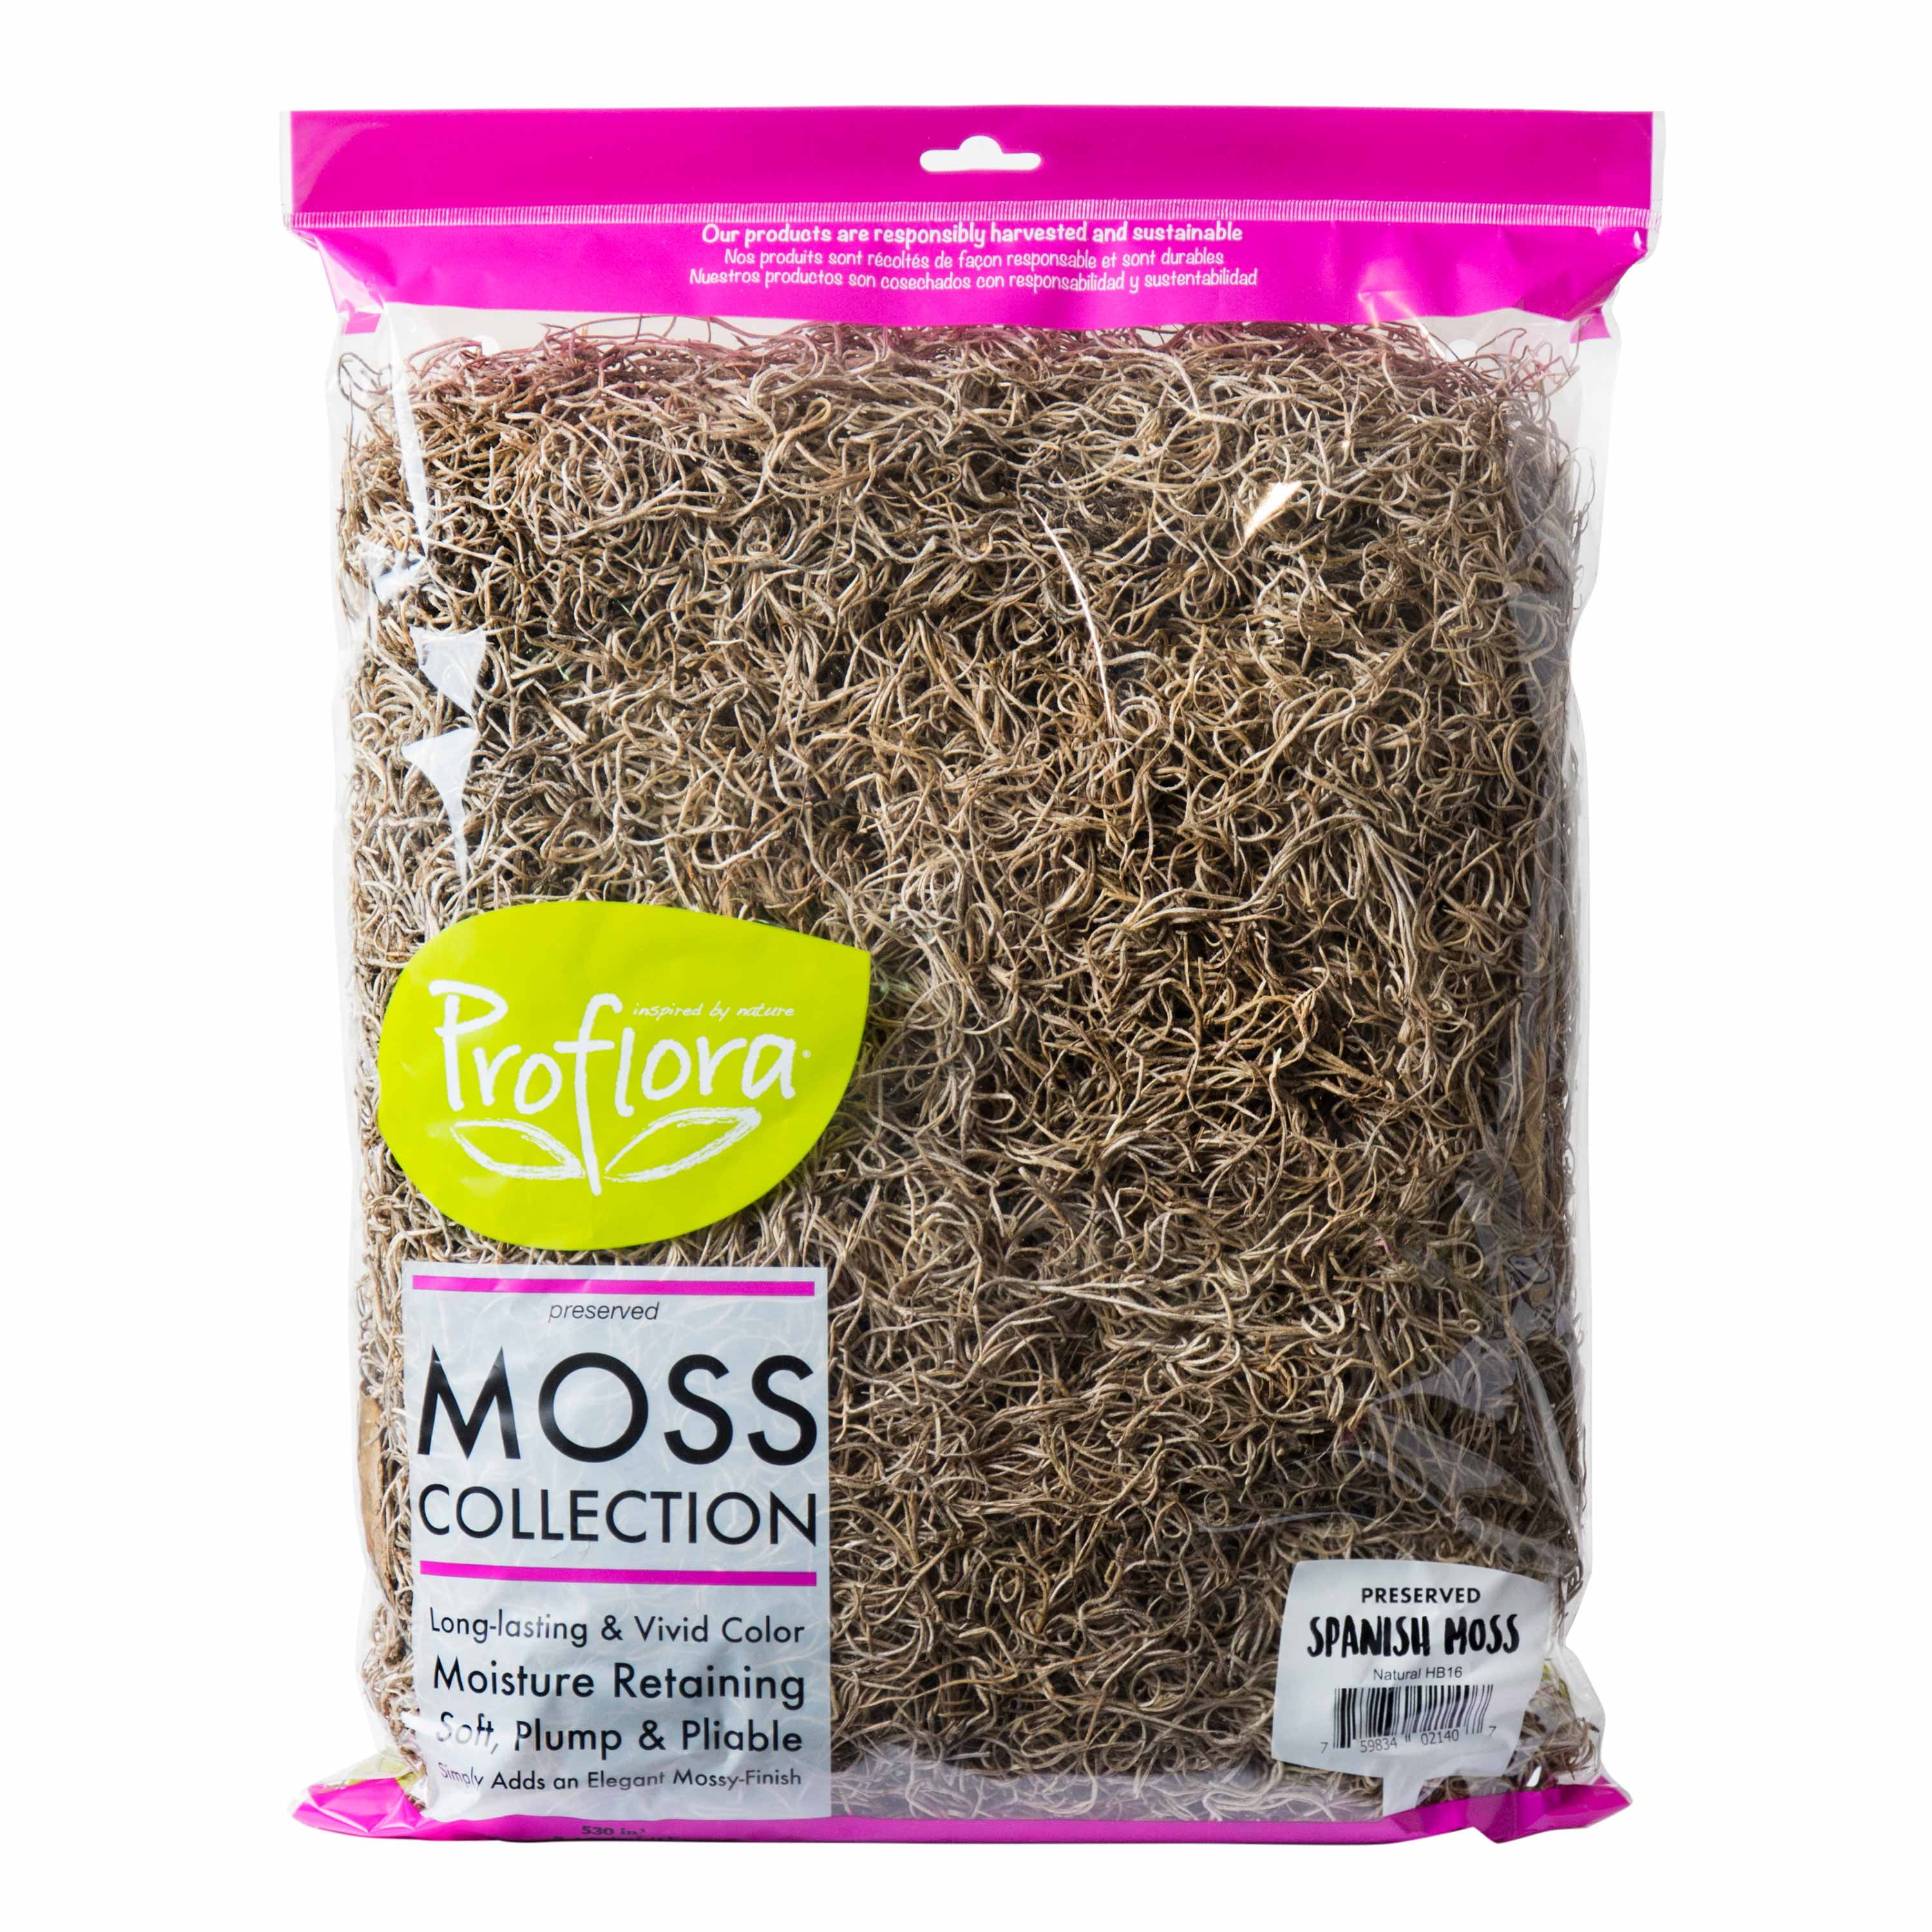 spanish moss